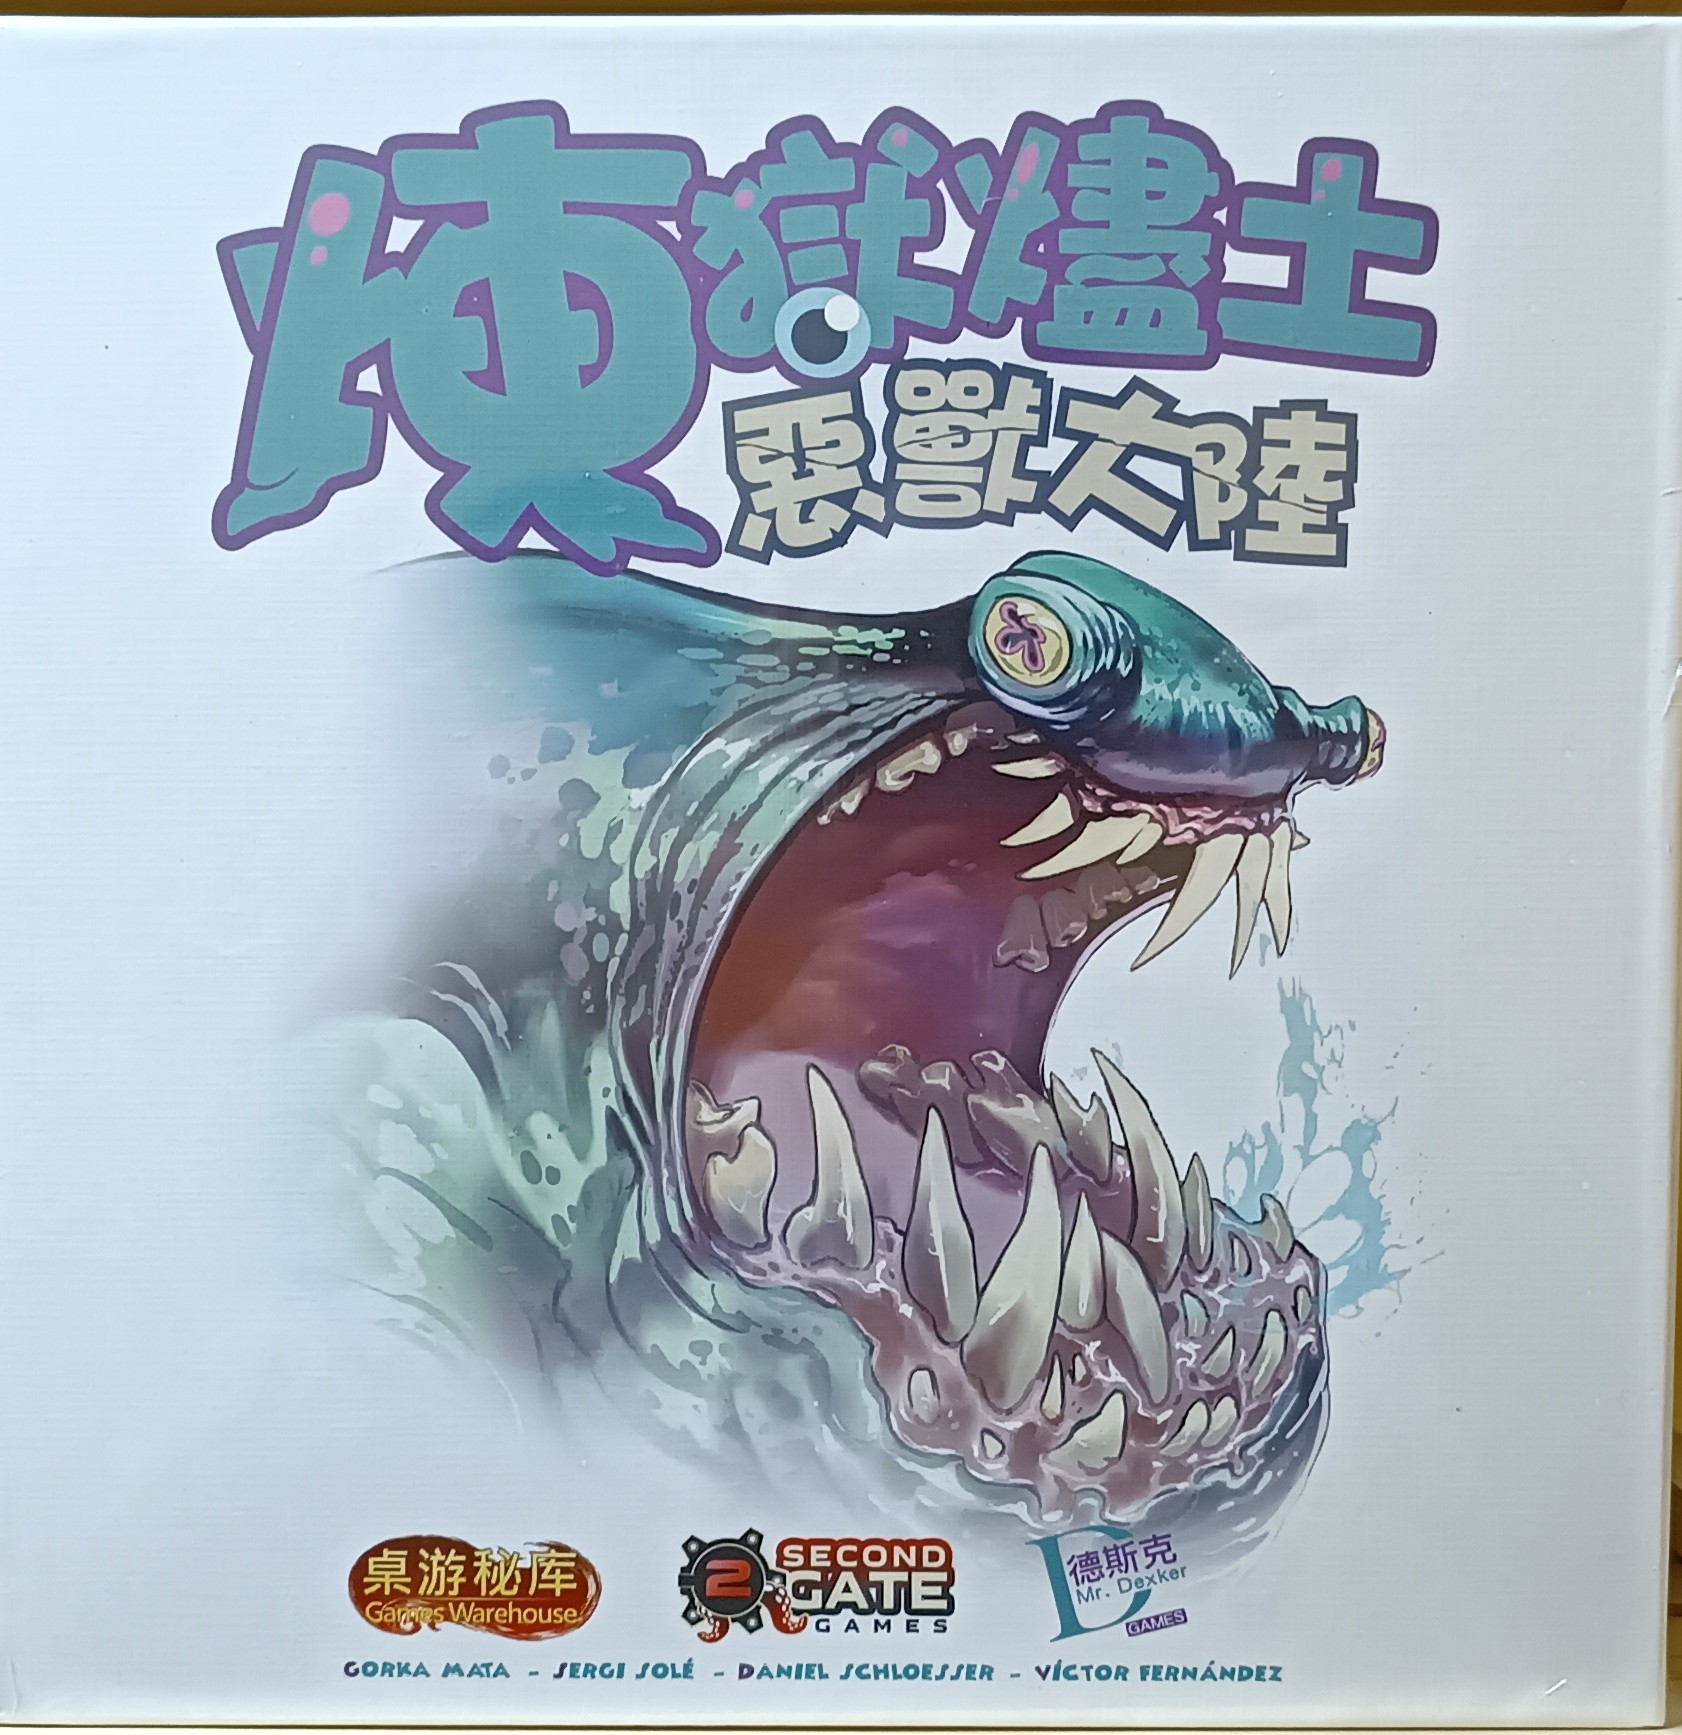 Настольная игра Second Gate Games Monster Lands Retail version на английском языке настольная игра plaid hat games familiar tales на английском языке